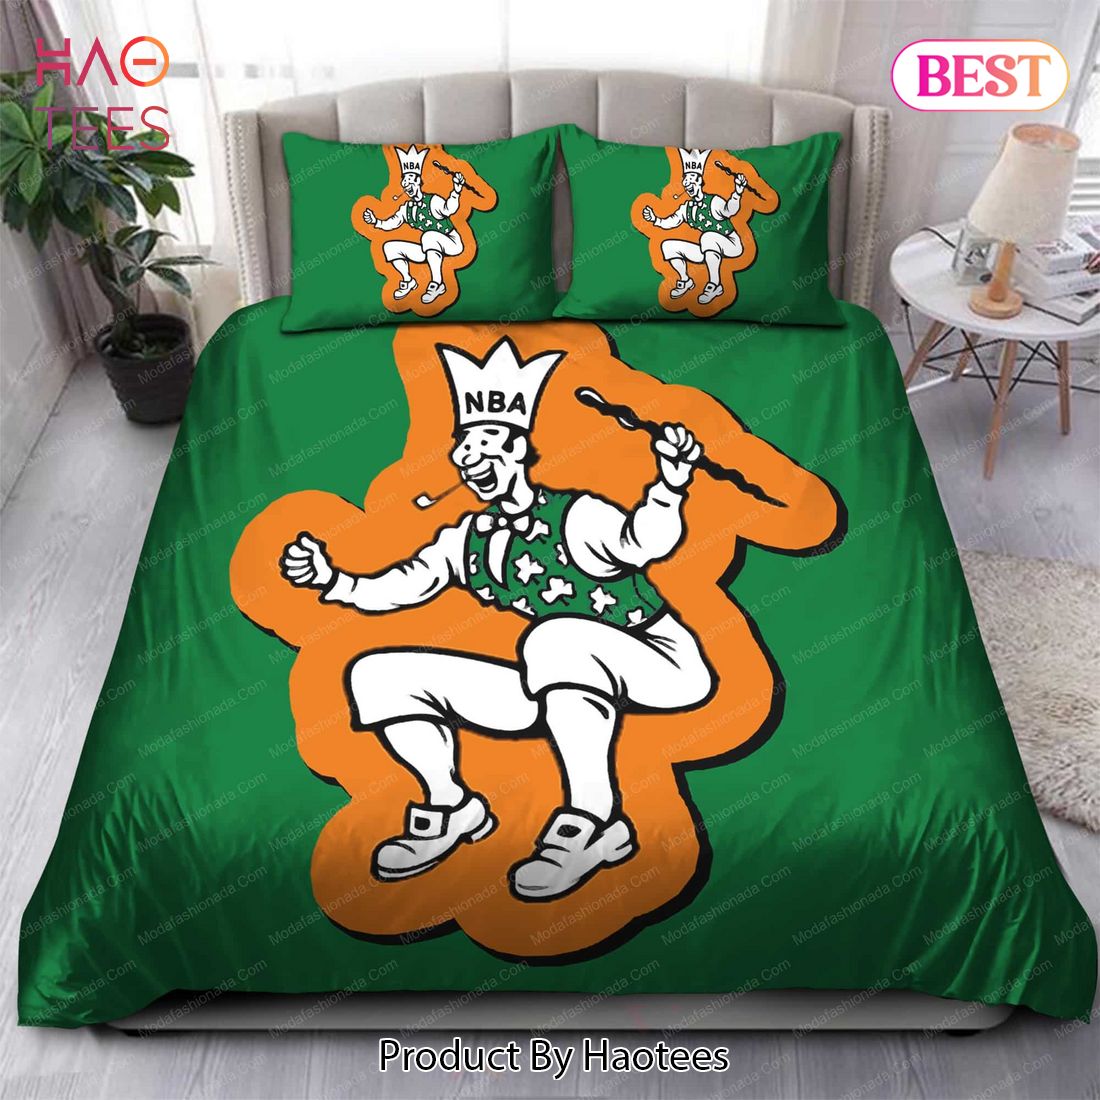 Buy 1960-1968 Logo Boston Celtics NBA 120 Bedding Sets Bed Sets, Bedroom Sets, Comforter Sets, Duvet Cover, Bedspread